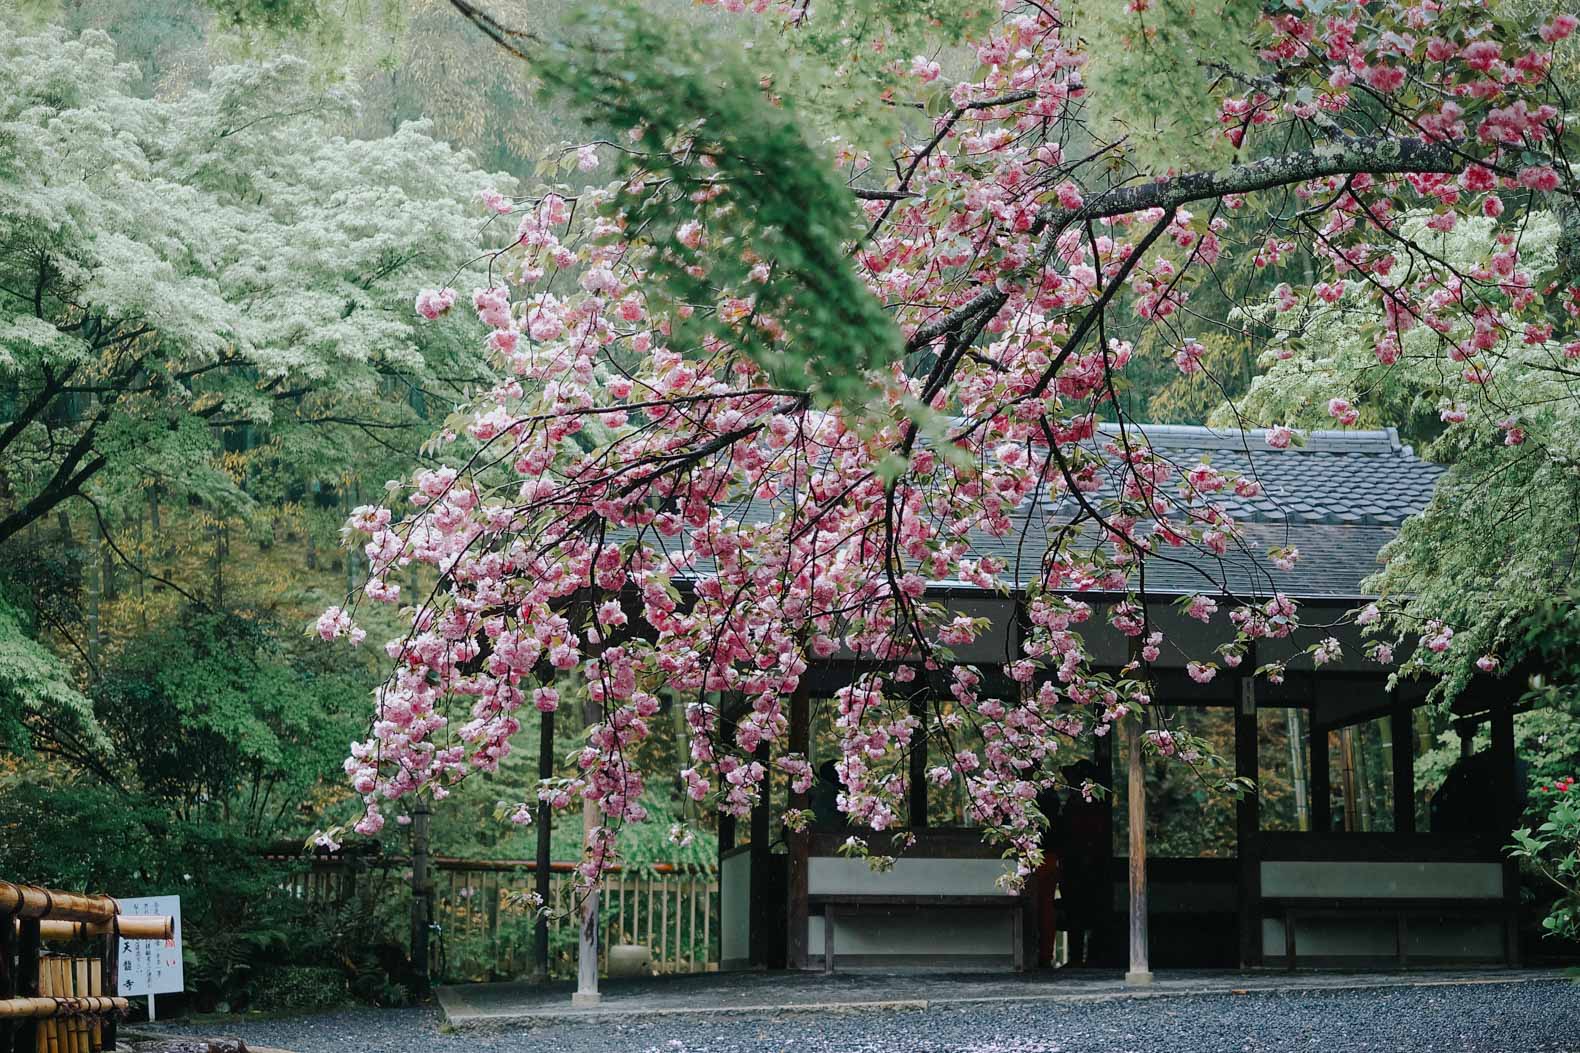 Cherry blossoms at Tenryu-ji